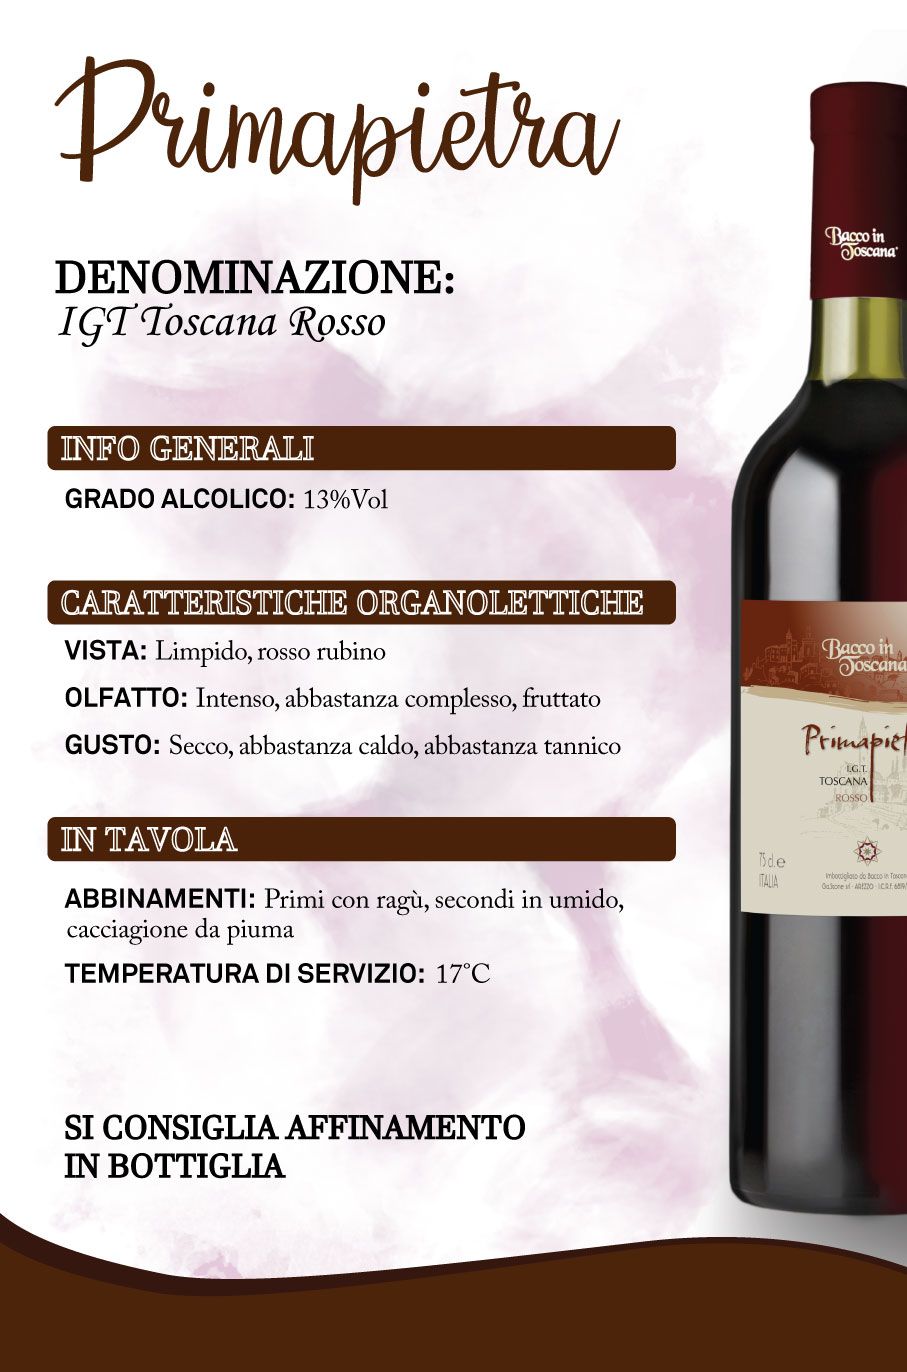 Cartellone informativo del vino sfuso Primapietra